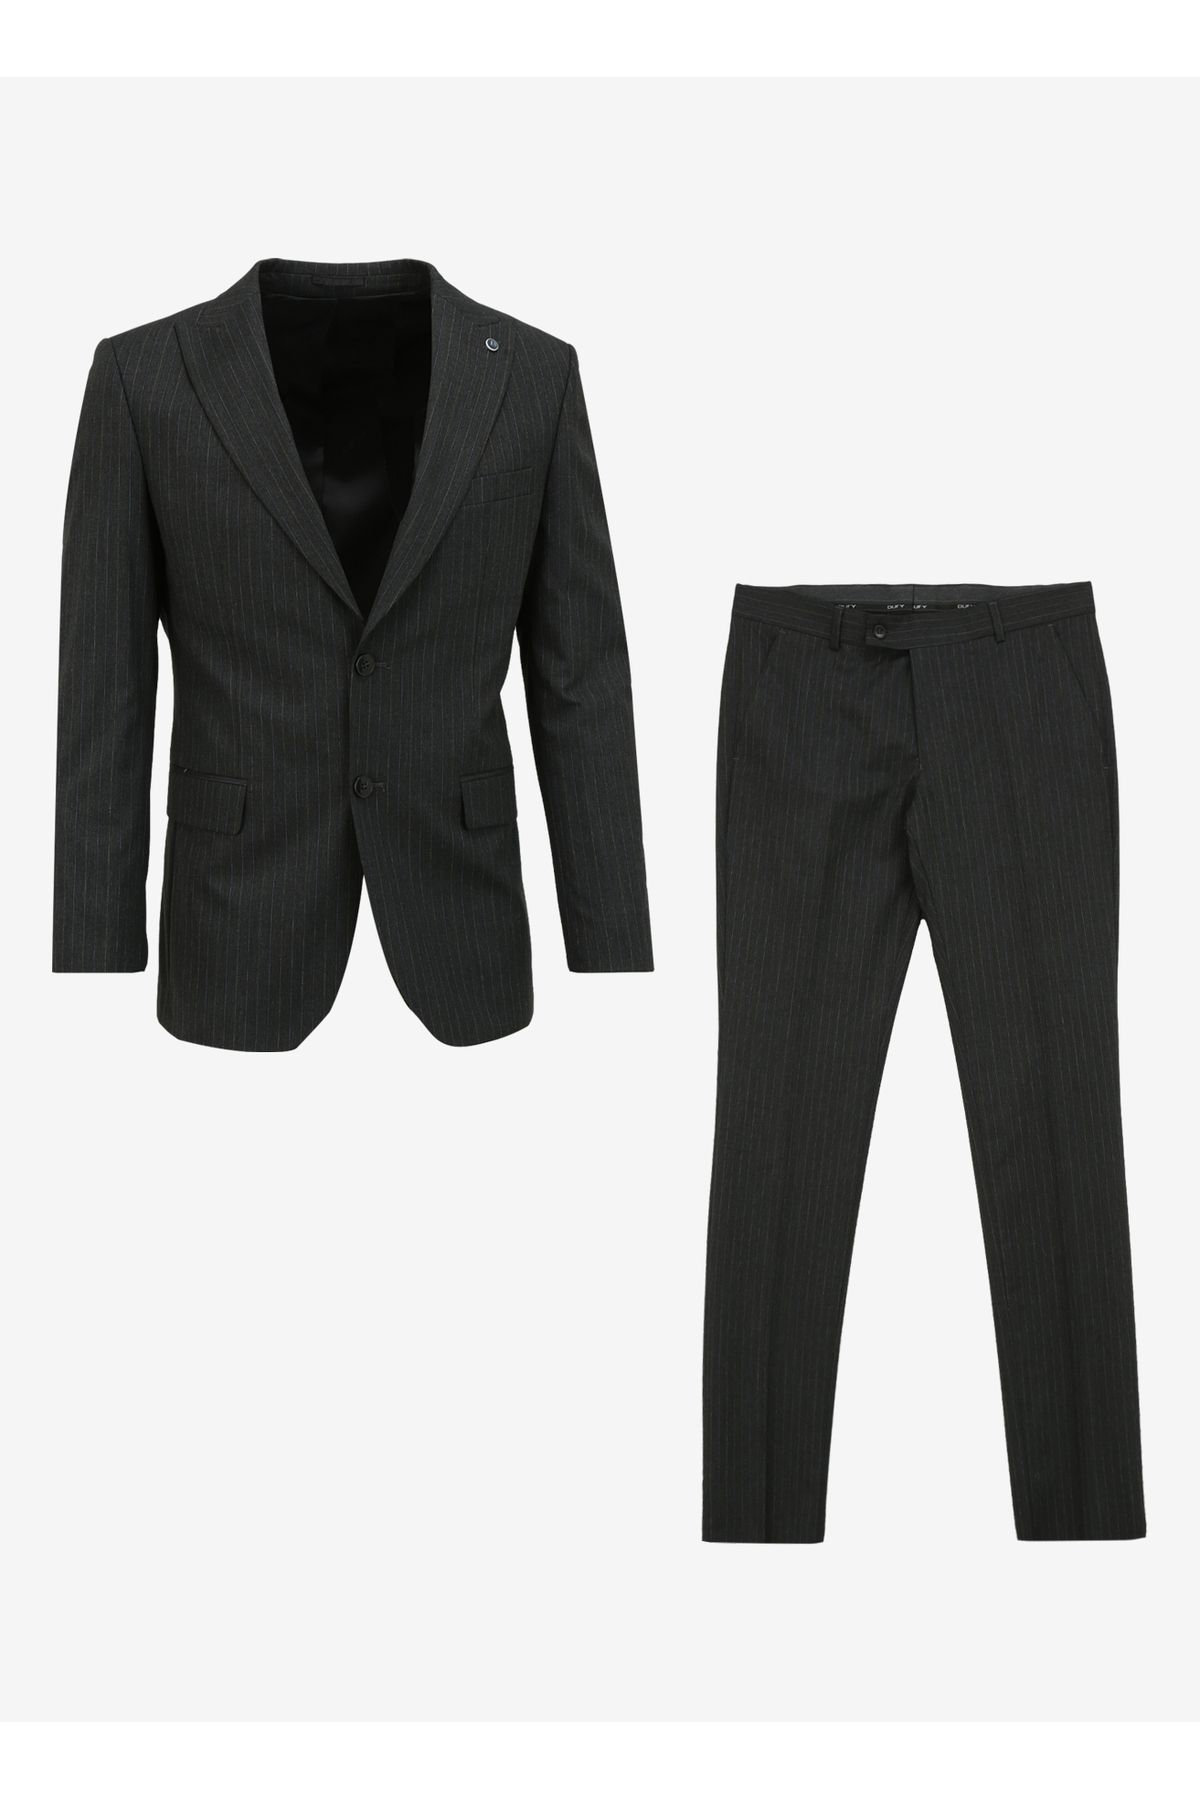 Dufy Standart Bel Slim Fit Antrasit Erkek Takım Elbise DU1234204003